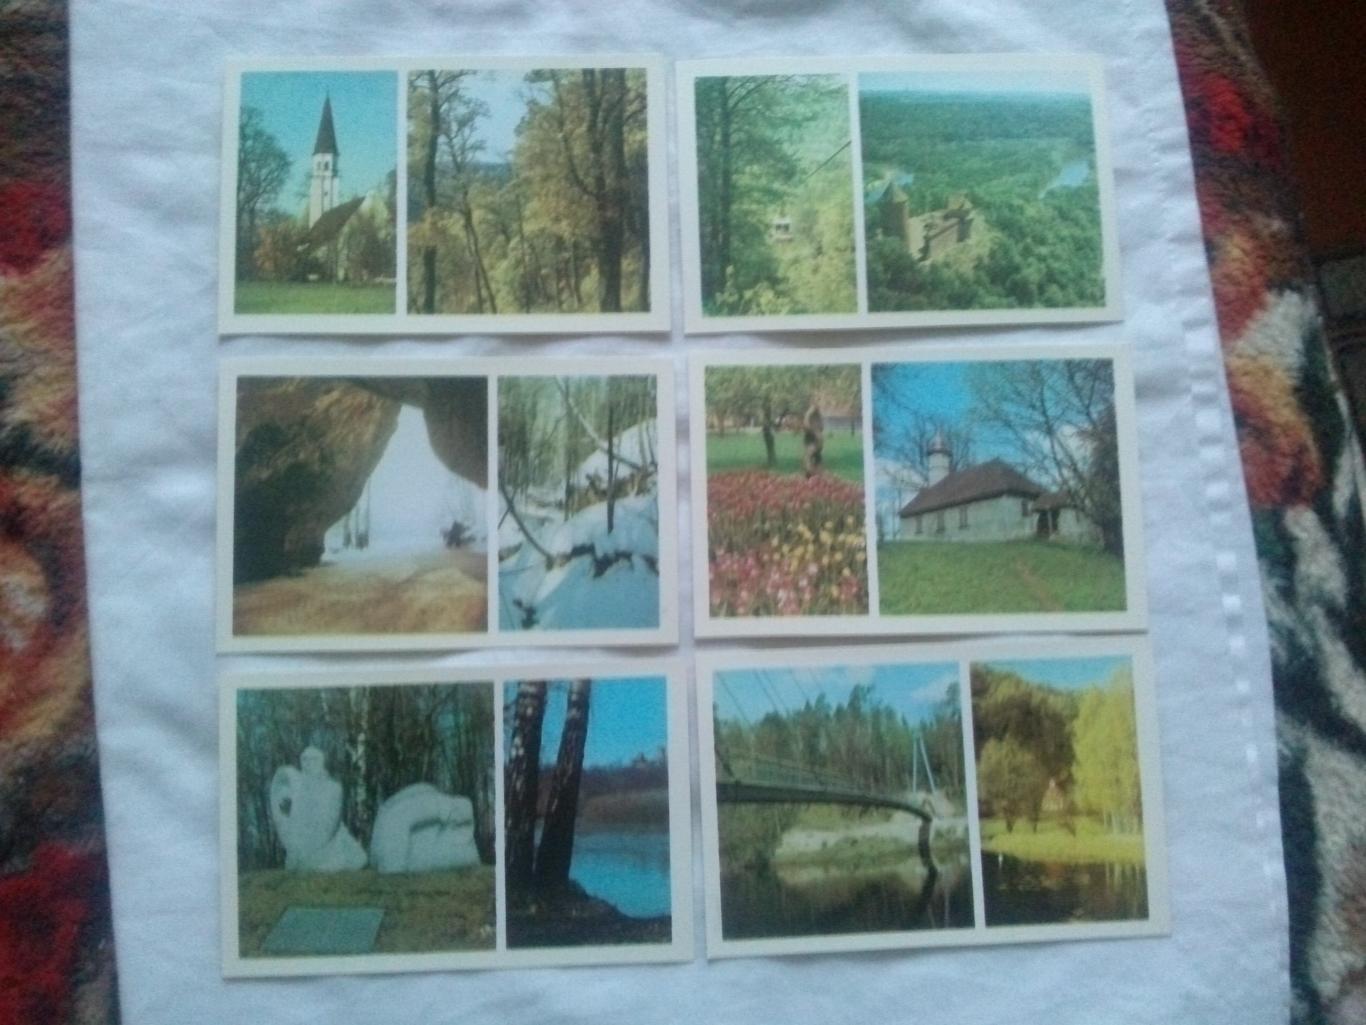 Памятные места СССР : Сигулда (Sigulda) 1984 г. полный набор- 18 открыток Латвия 4